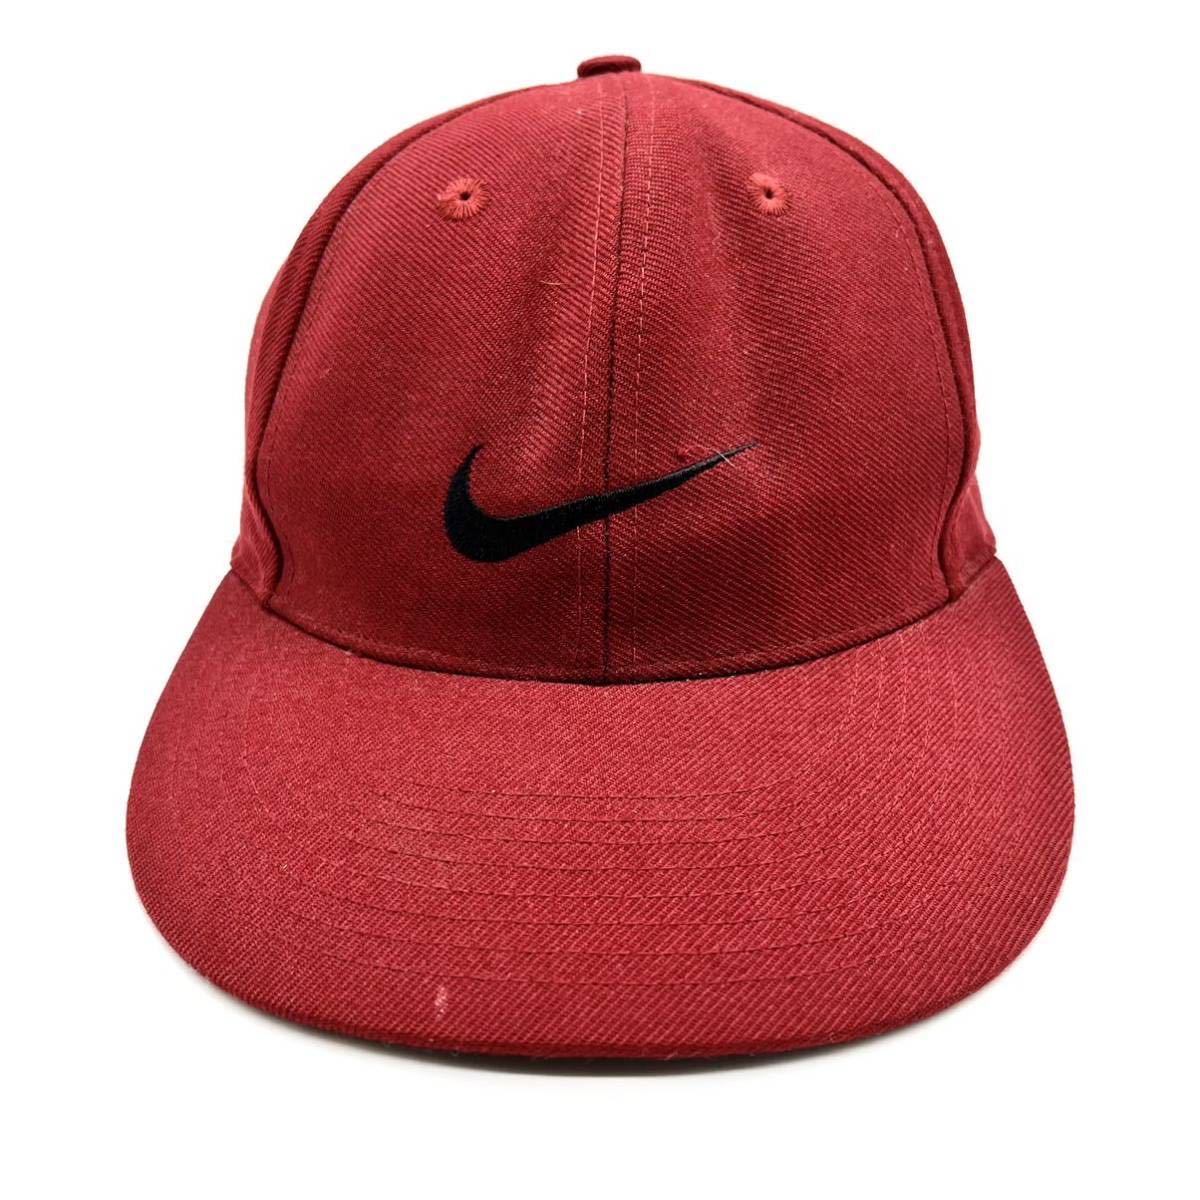 【ヴィンテージ】90s NIKE(ナイキ) 刺繍ロゴ ベースボールキャップ レッド/赤 スウォッシュロゴ 白タグ 6パネルキャップ ビンテージ 帽子